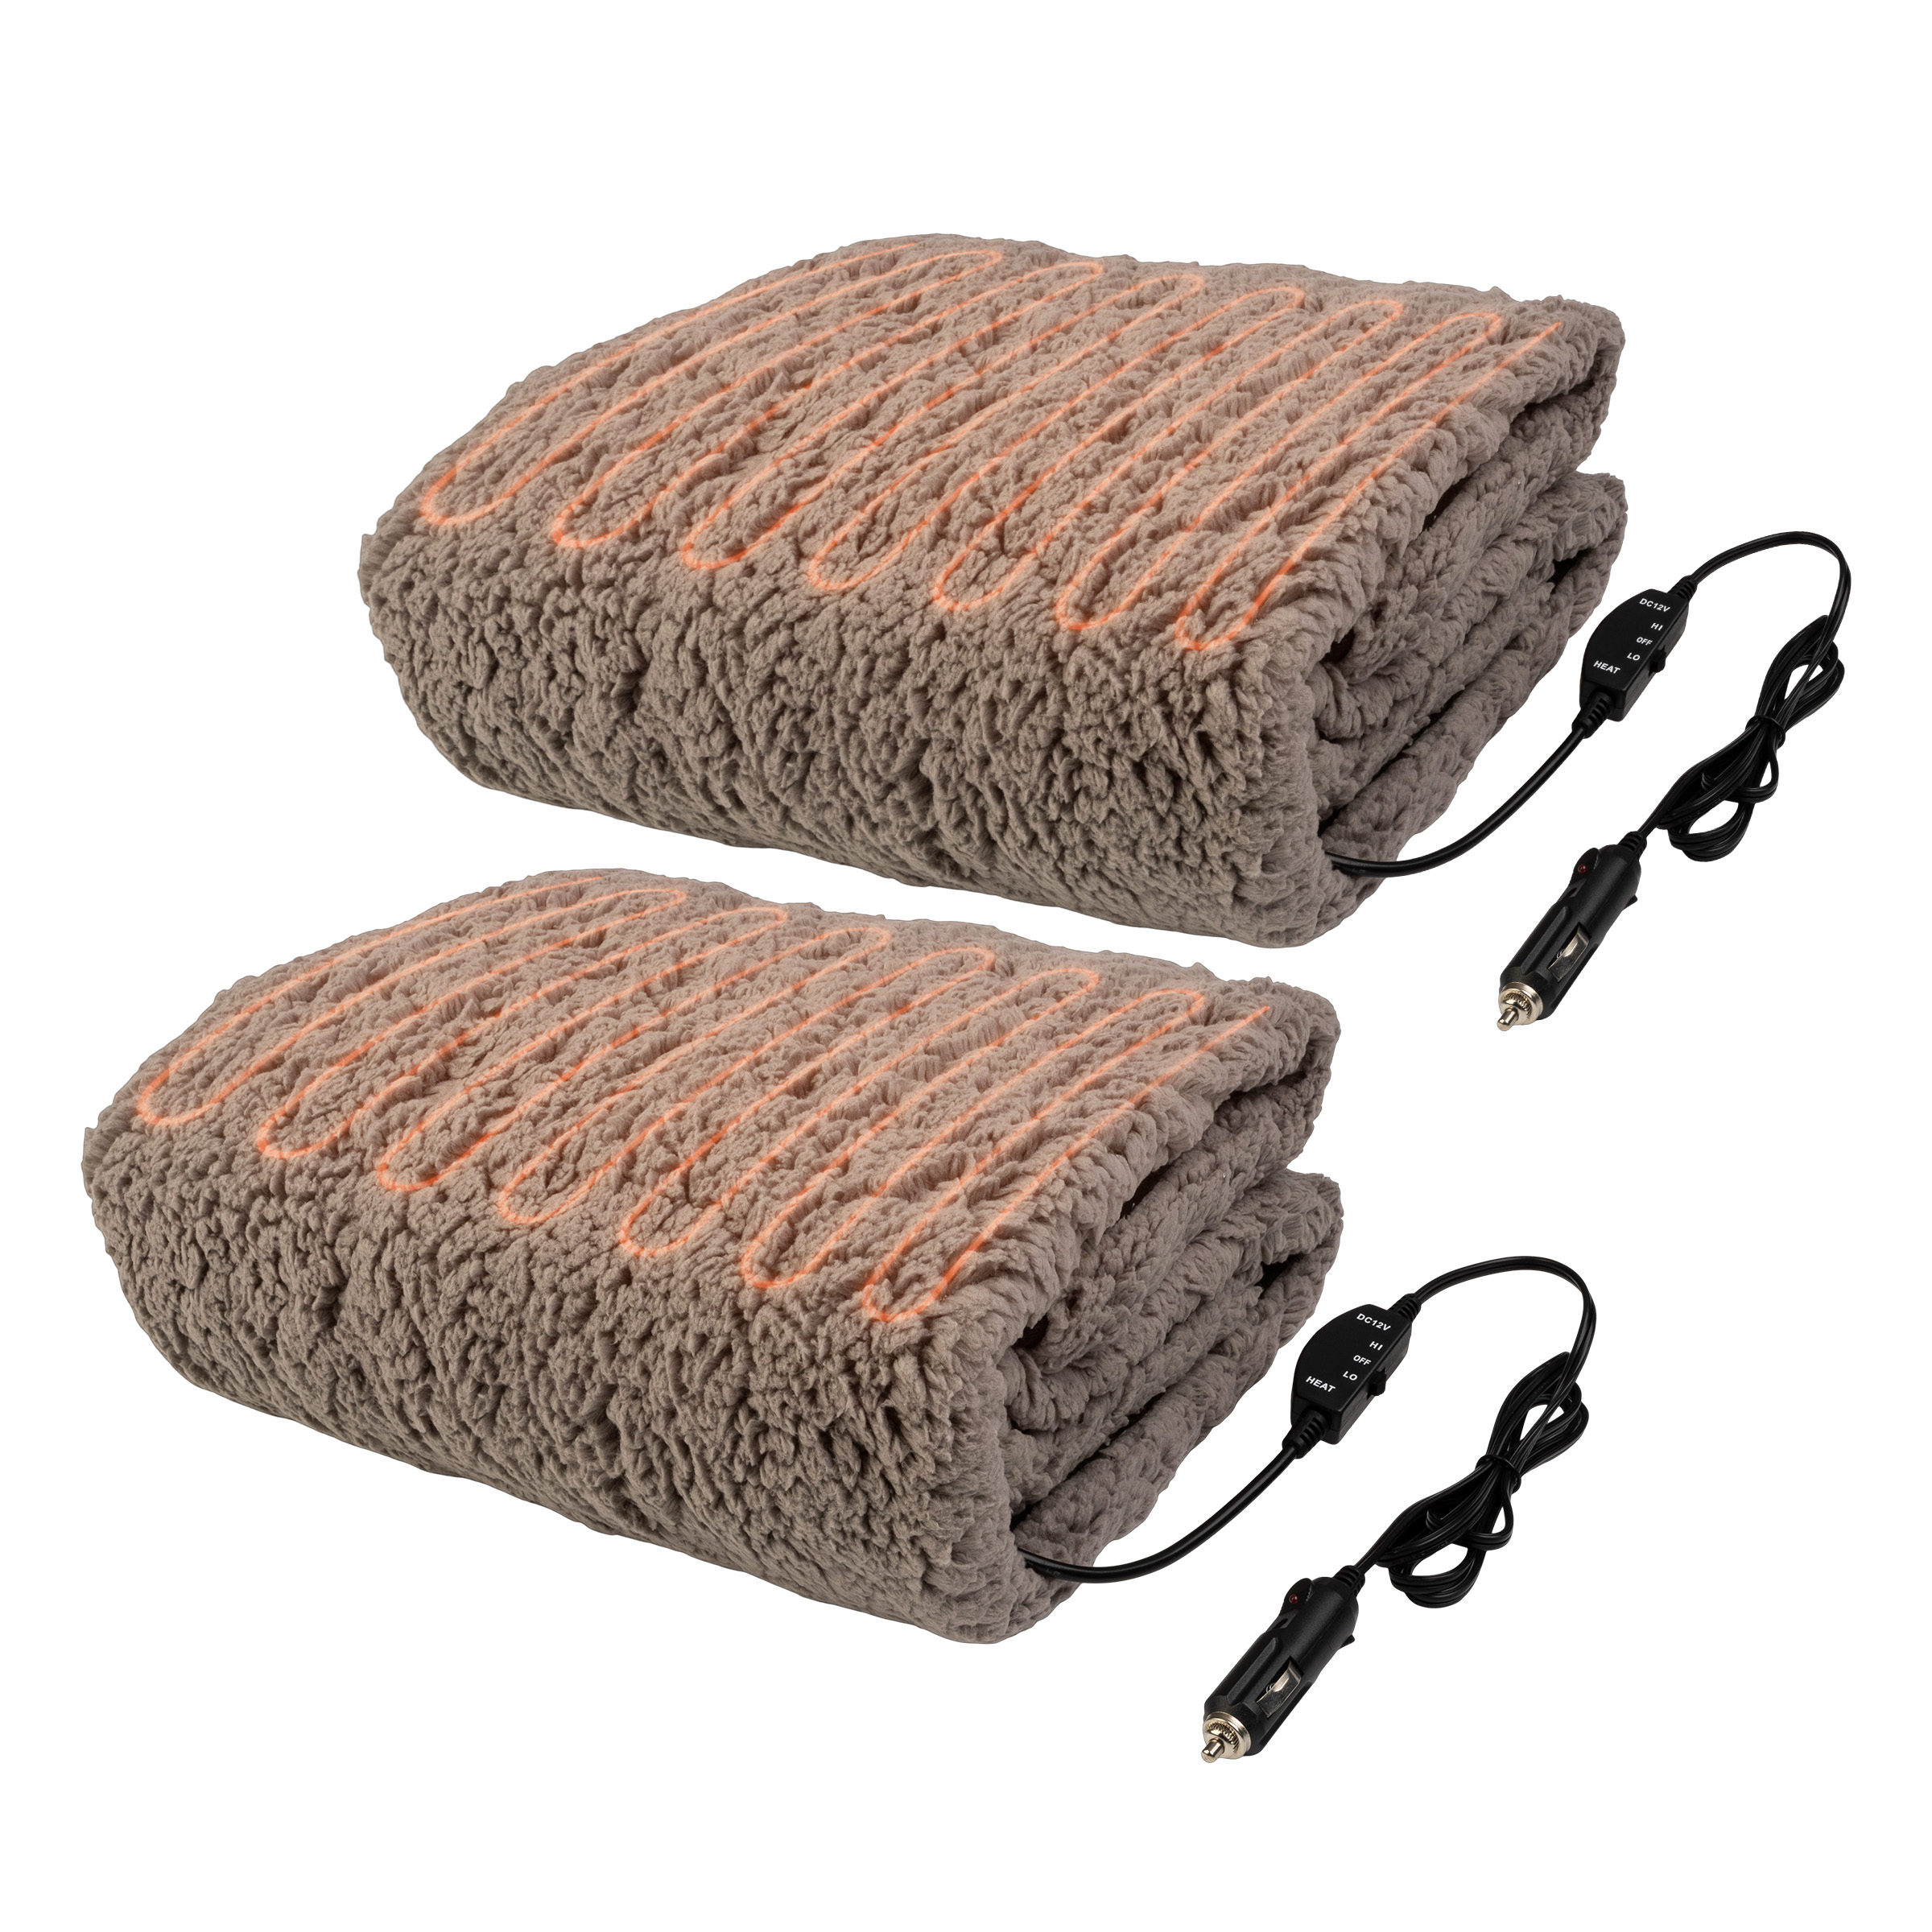 2Pack Heated Blanket Portable 12V Electric Travel Blanket Set For Car Truck RV - Honey